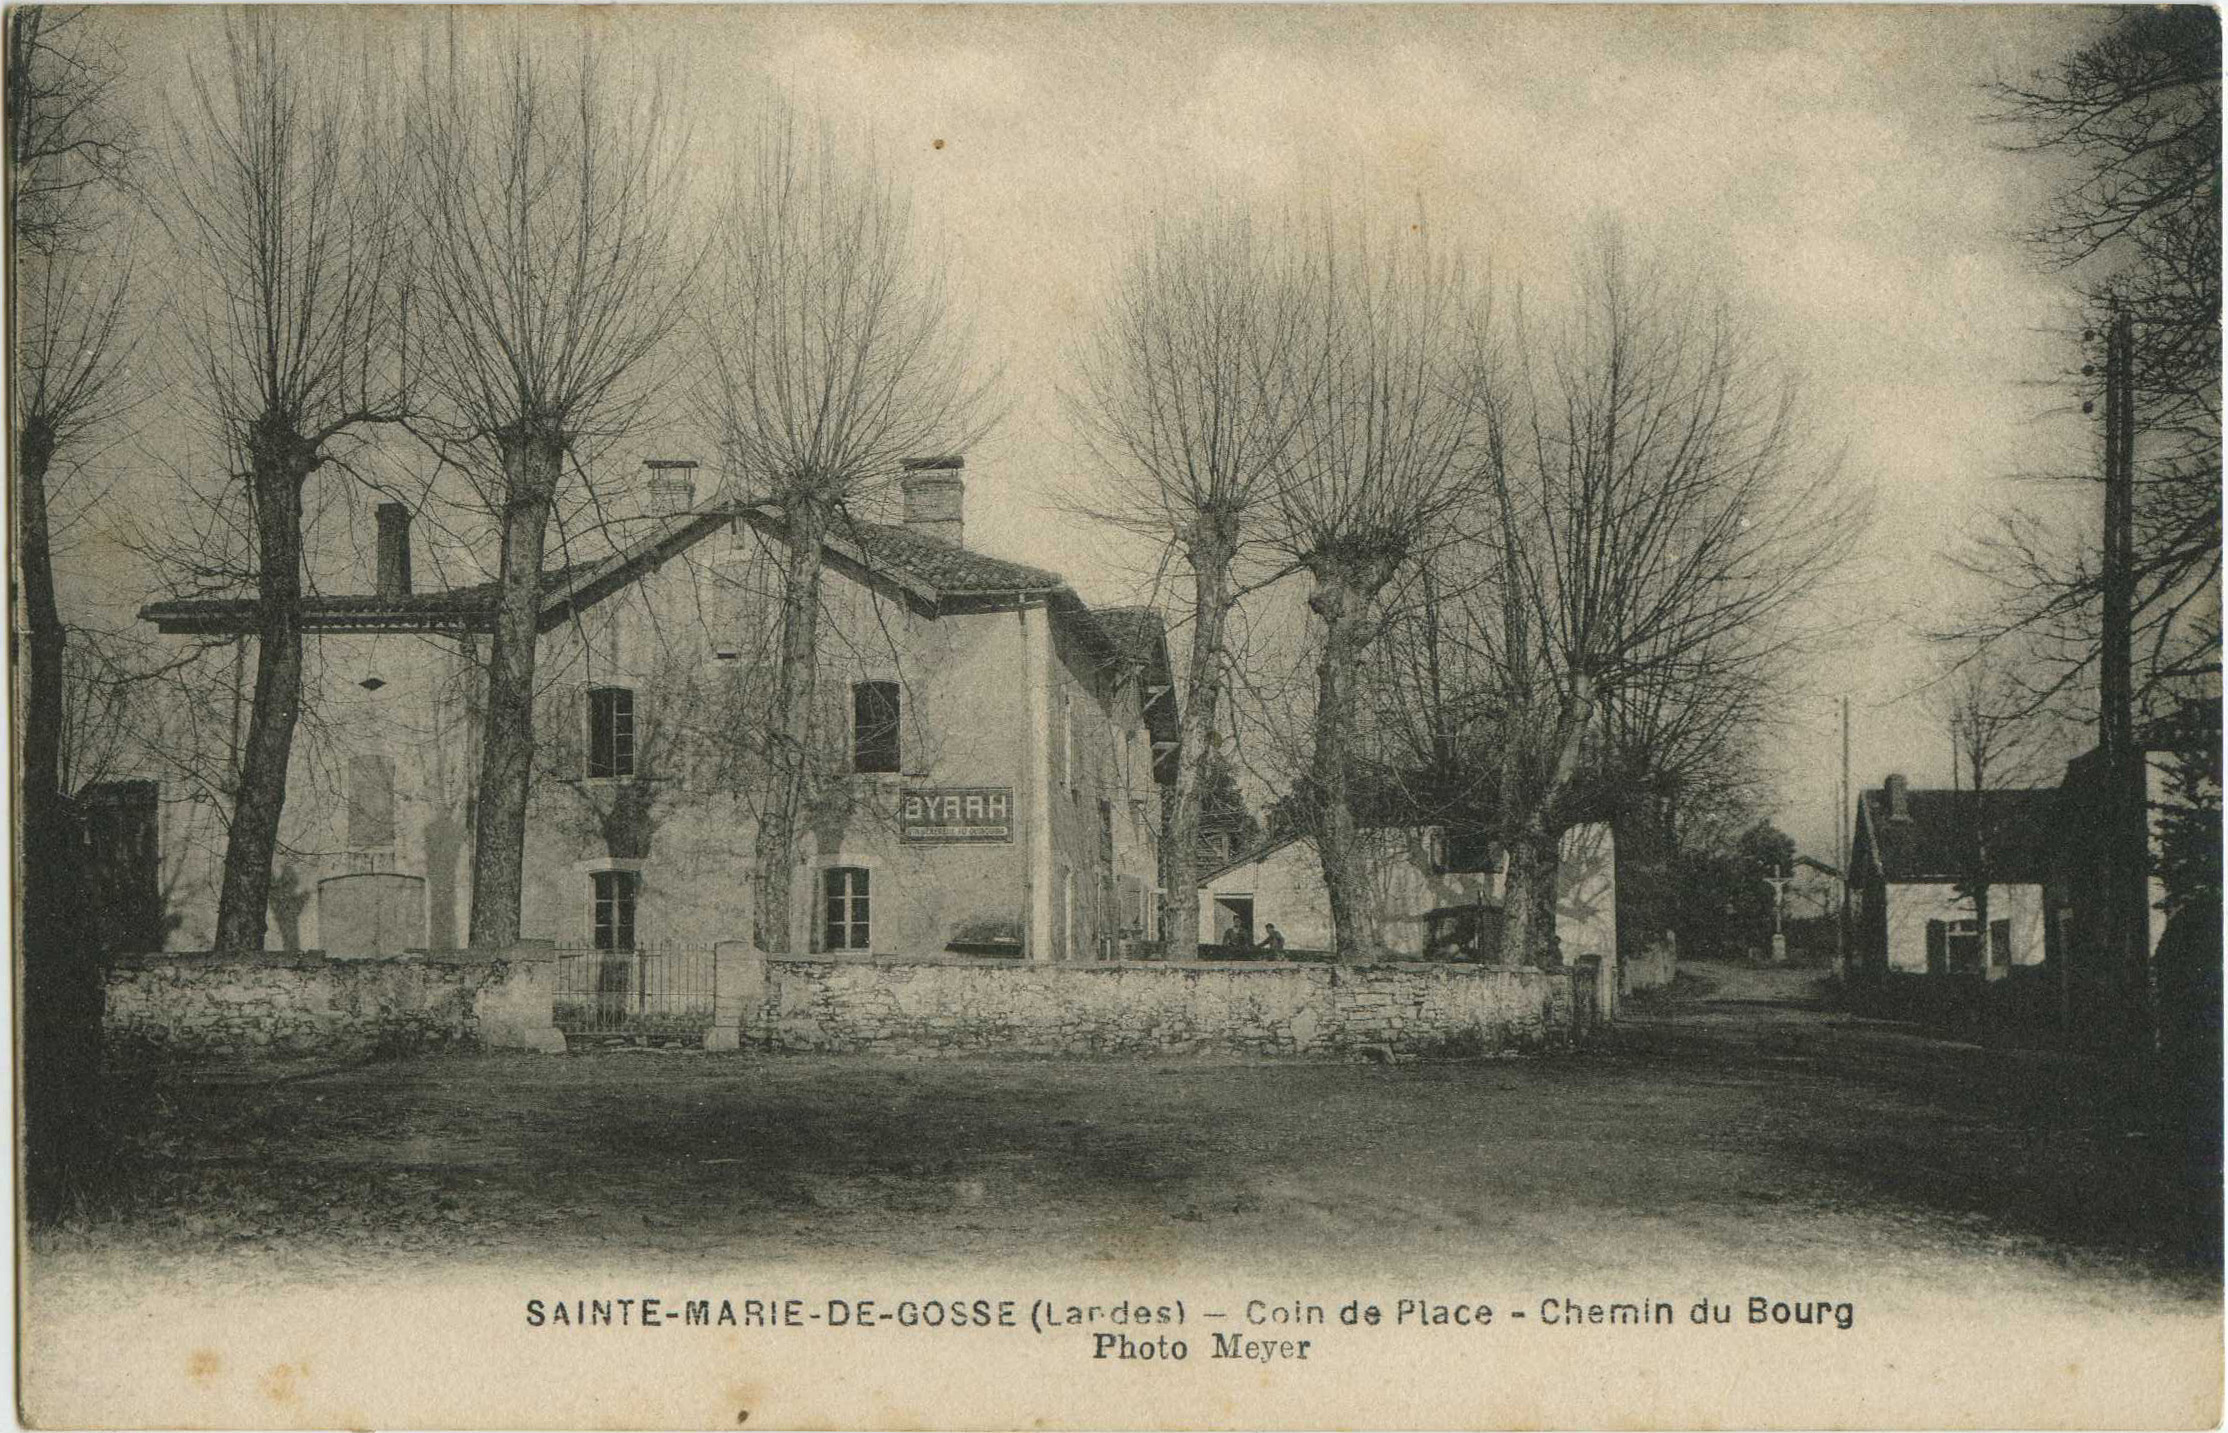 Sainte-Marie-de-Gosse - Coin de Place - Chemin du Bourg